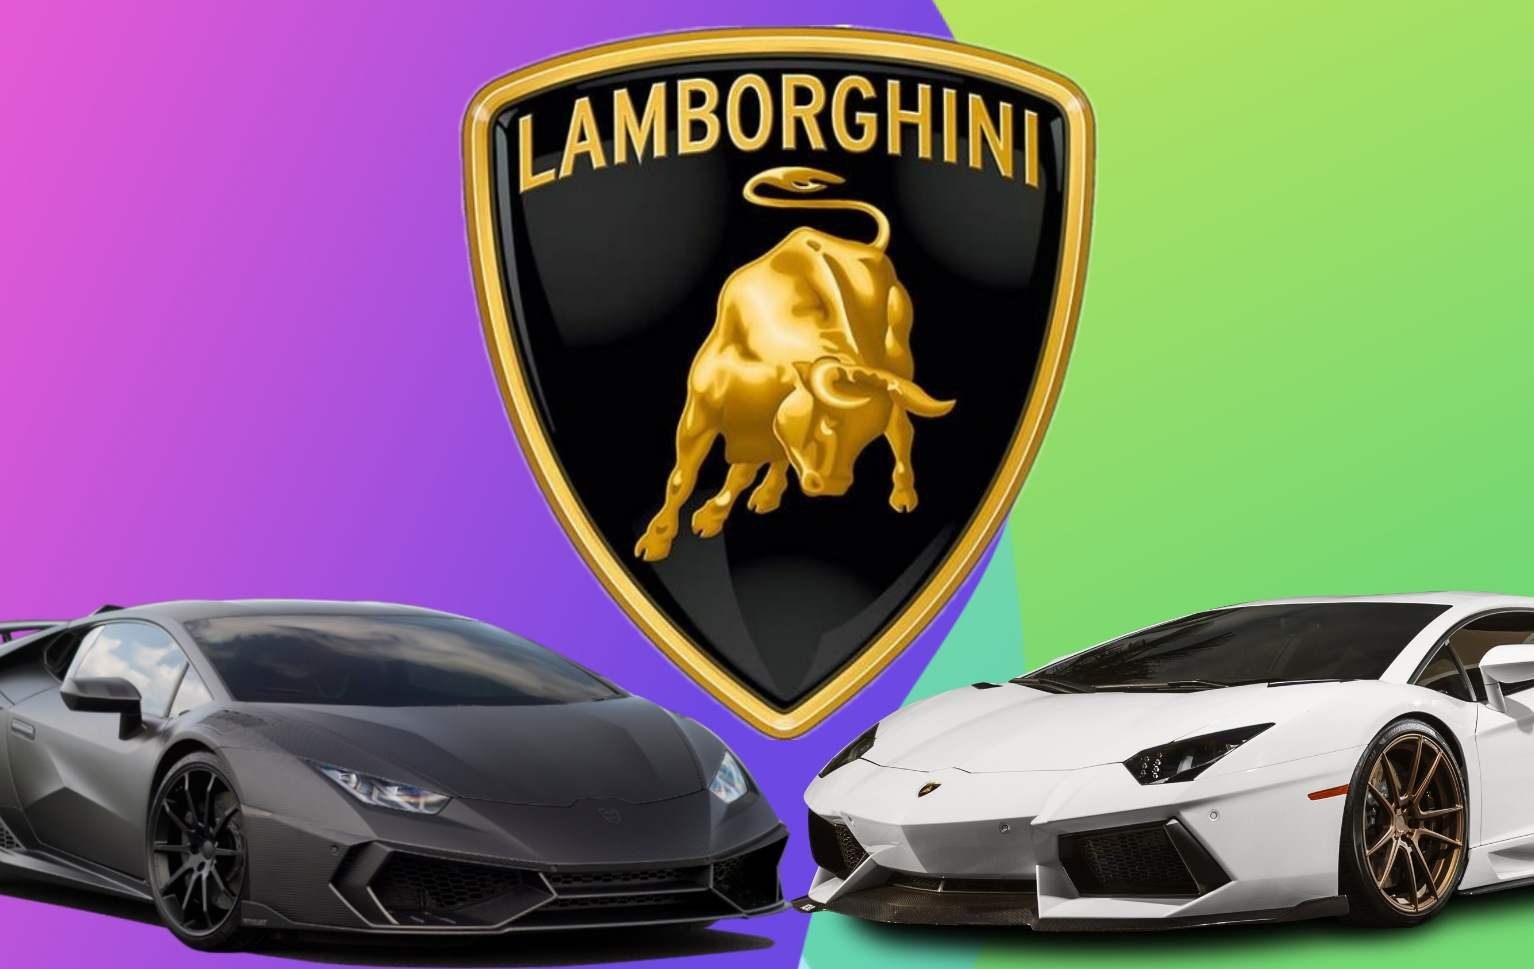 Lamborghini Car Price in India